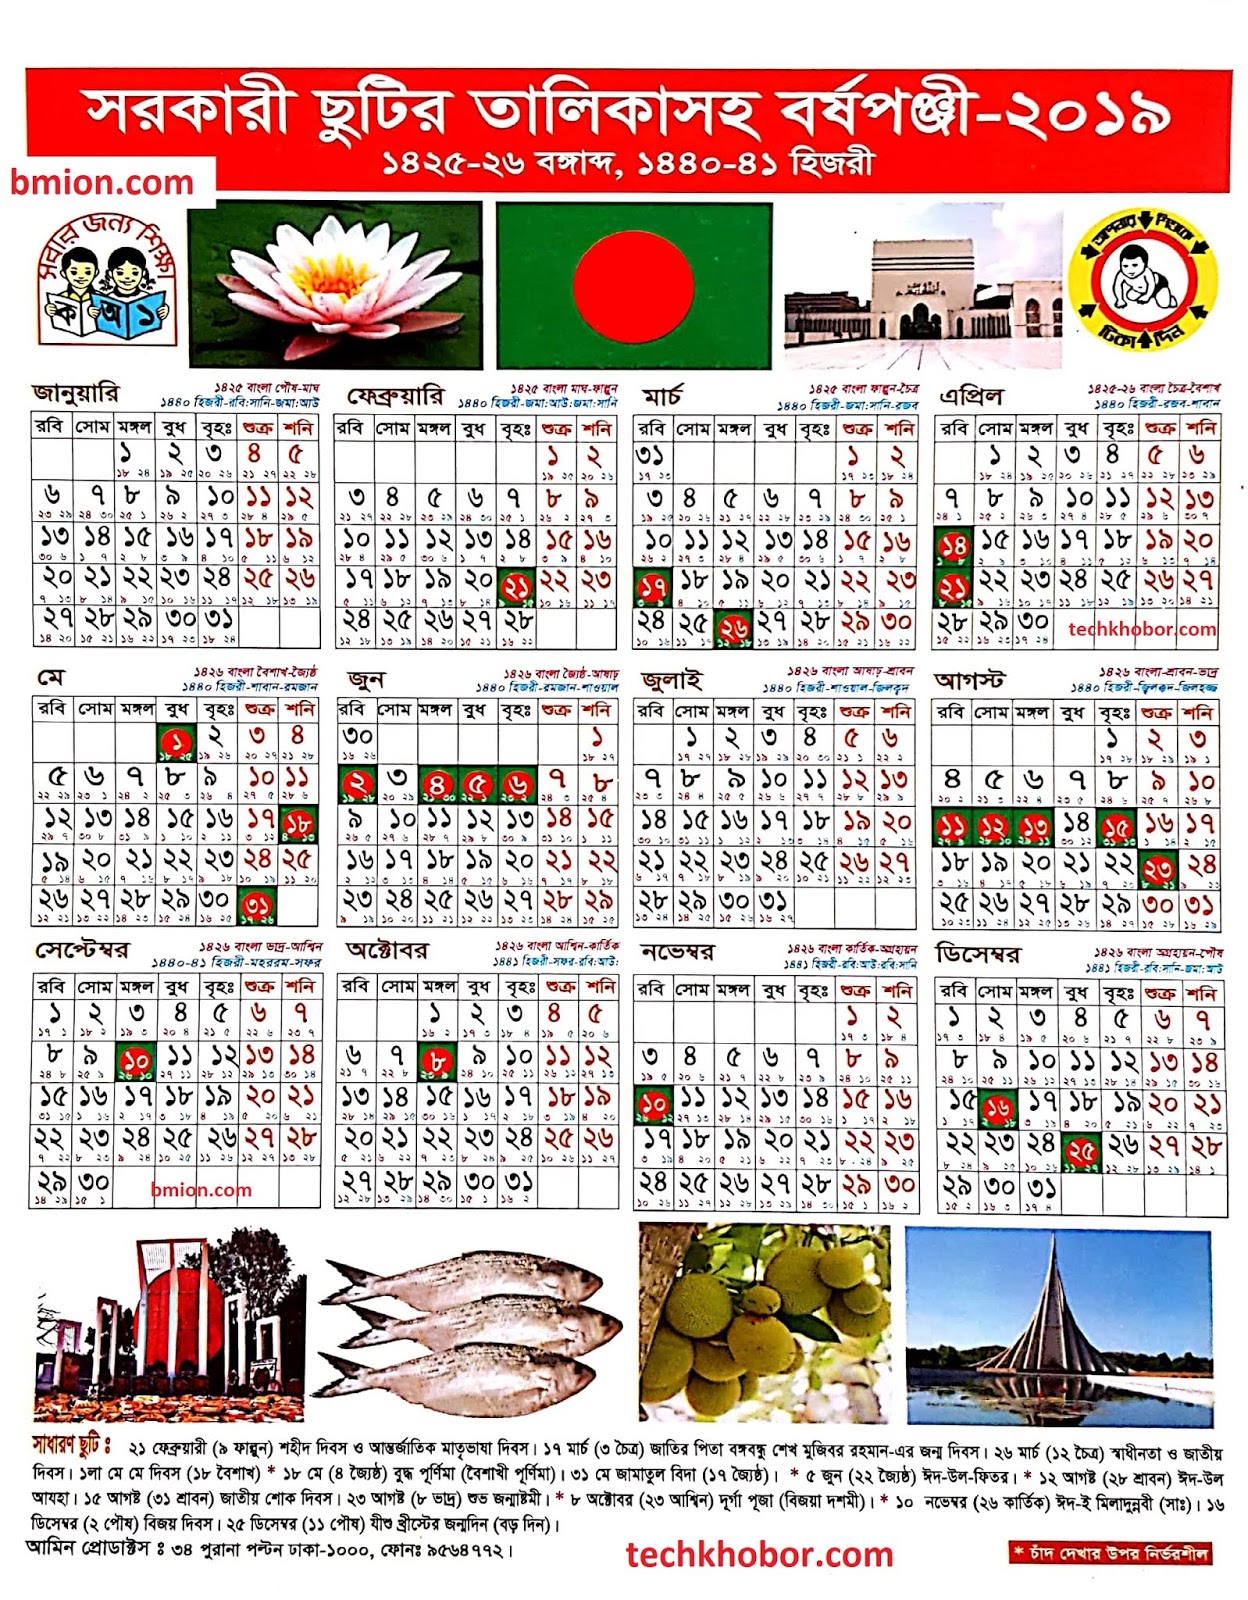 bangladesh-government-calendar-2020-pdf-calendario-2019